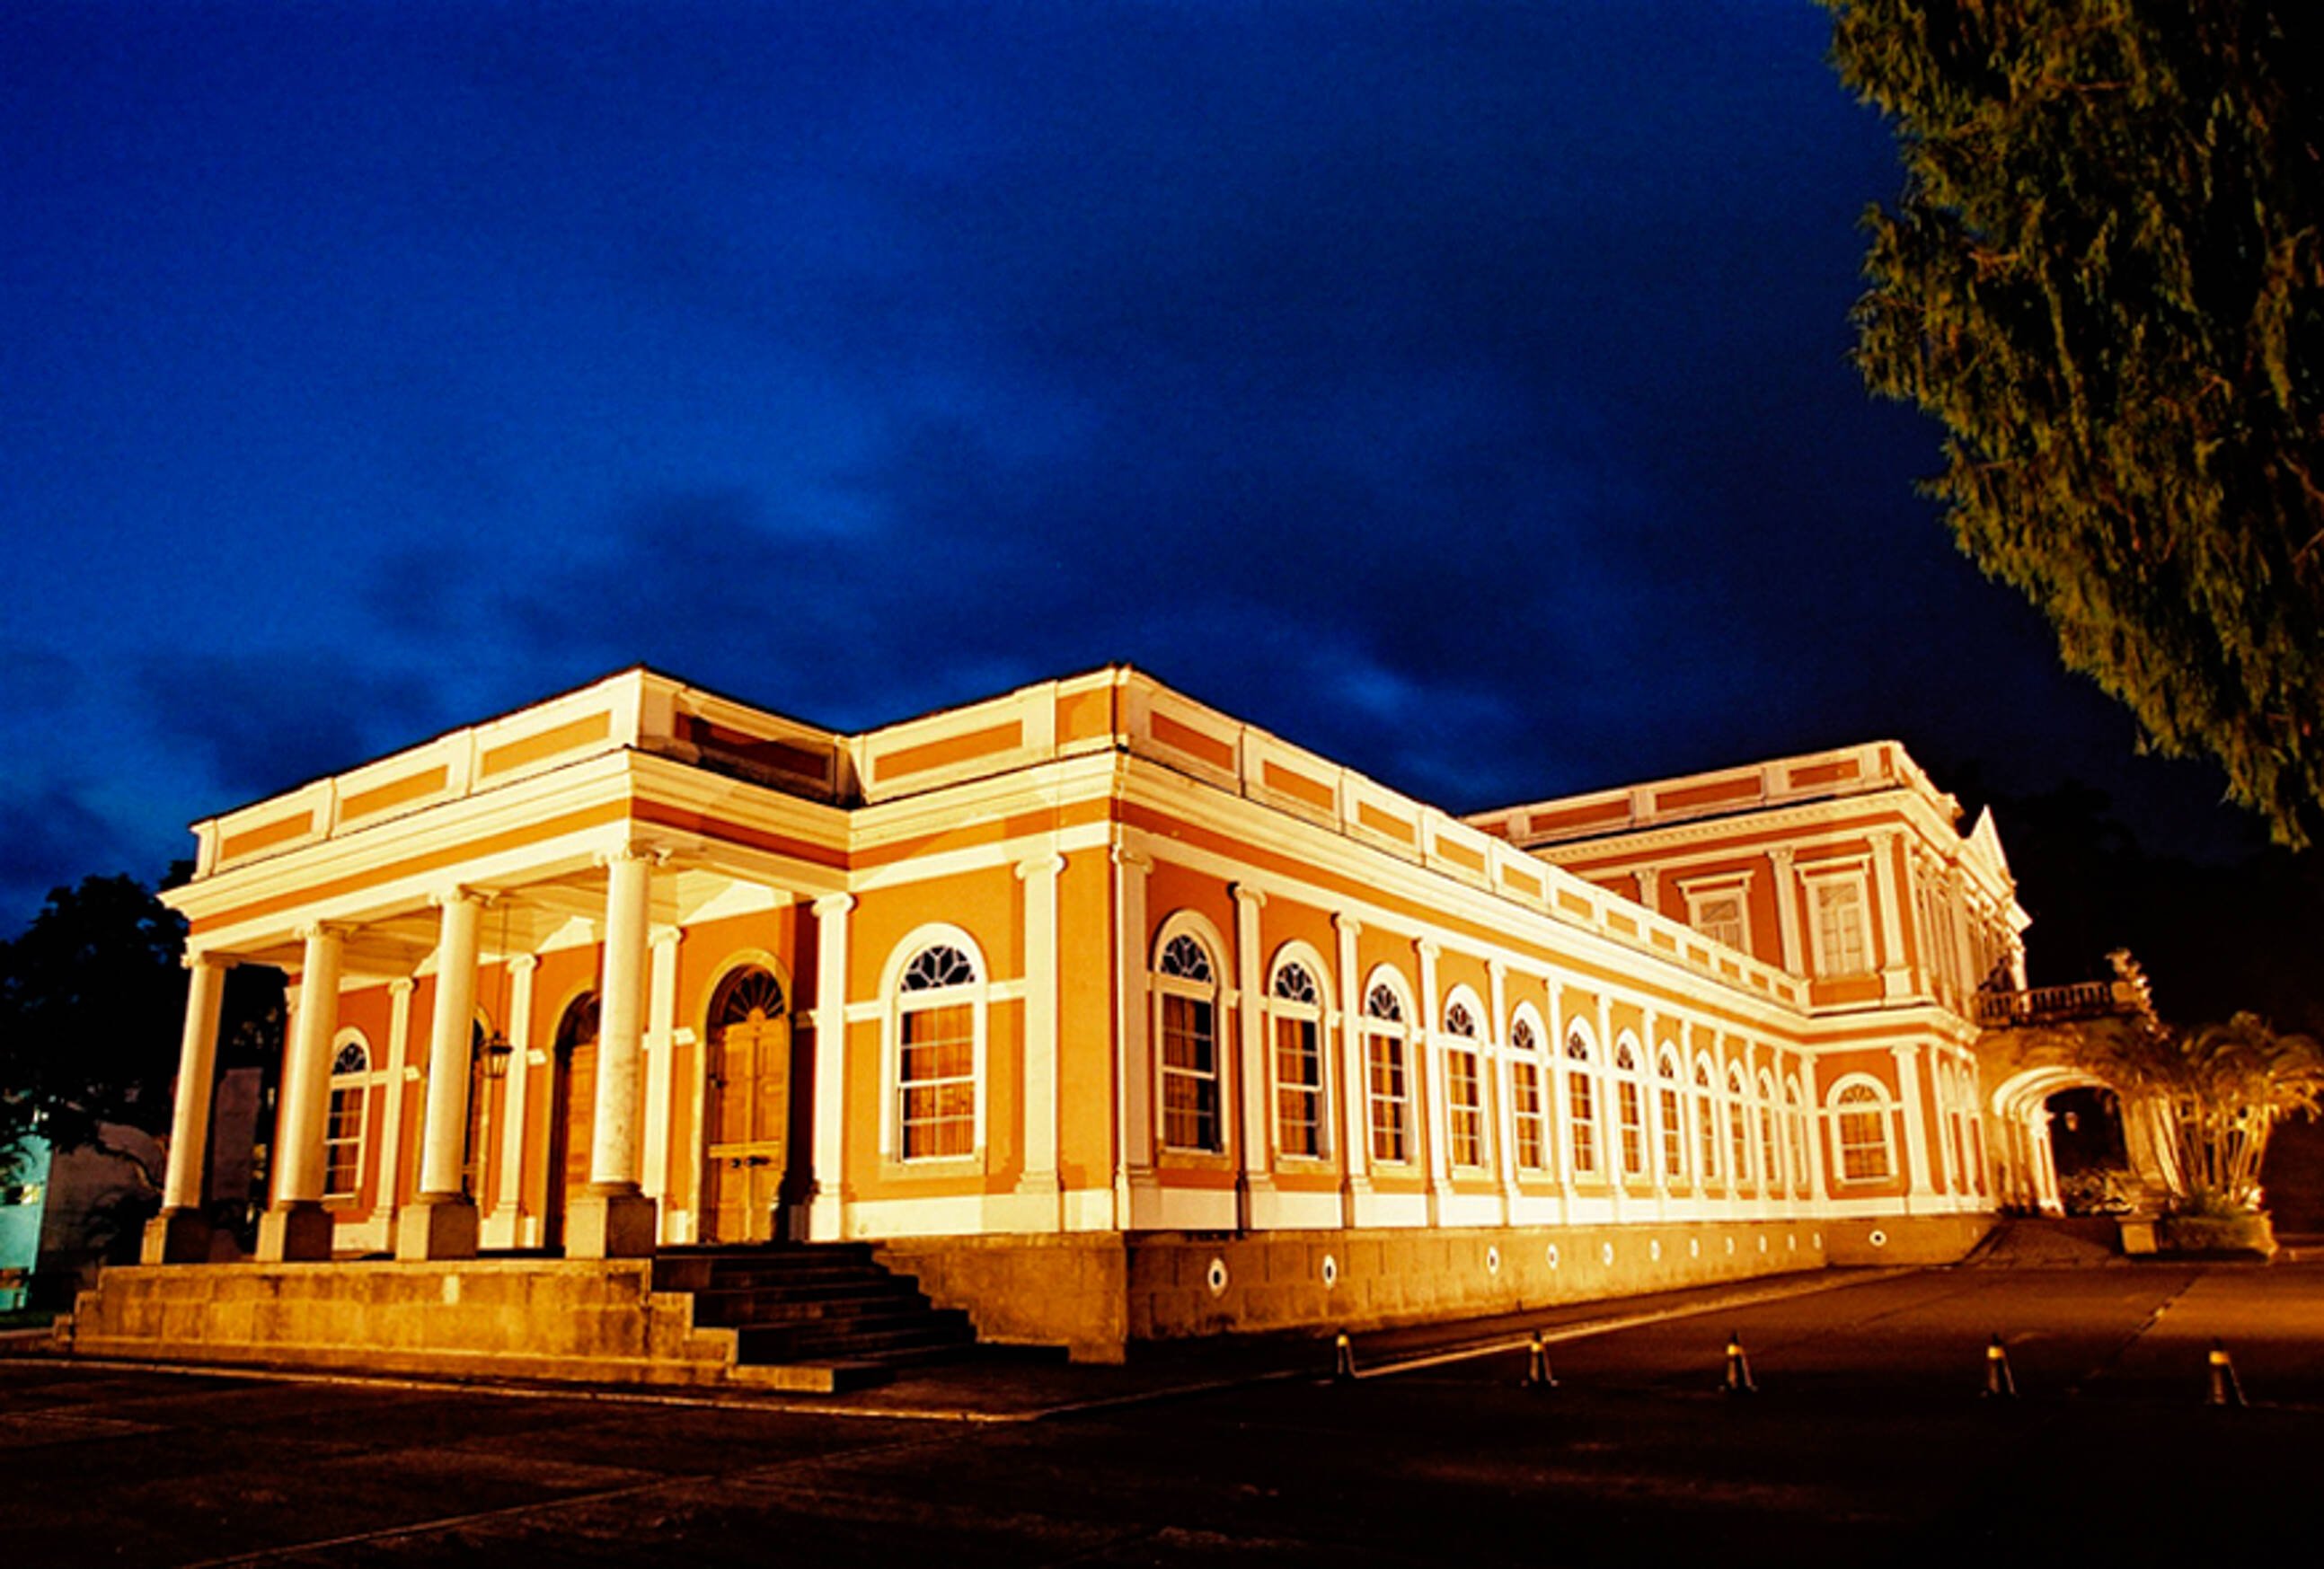 Museu Imperial, um dos principais pontos turísticos de Petrópolis. Foto: Evaldo Macedo/Prefeitura de Petrópolis